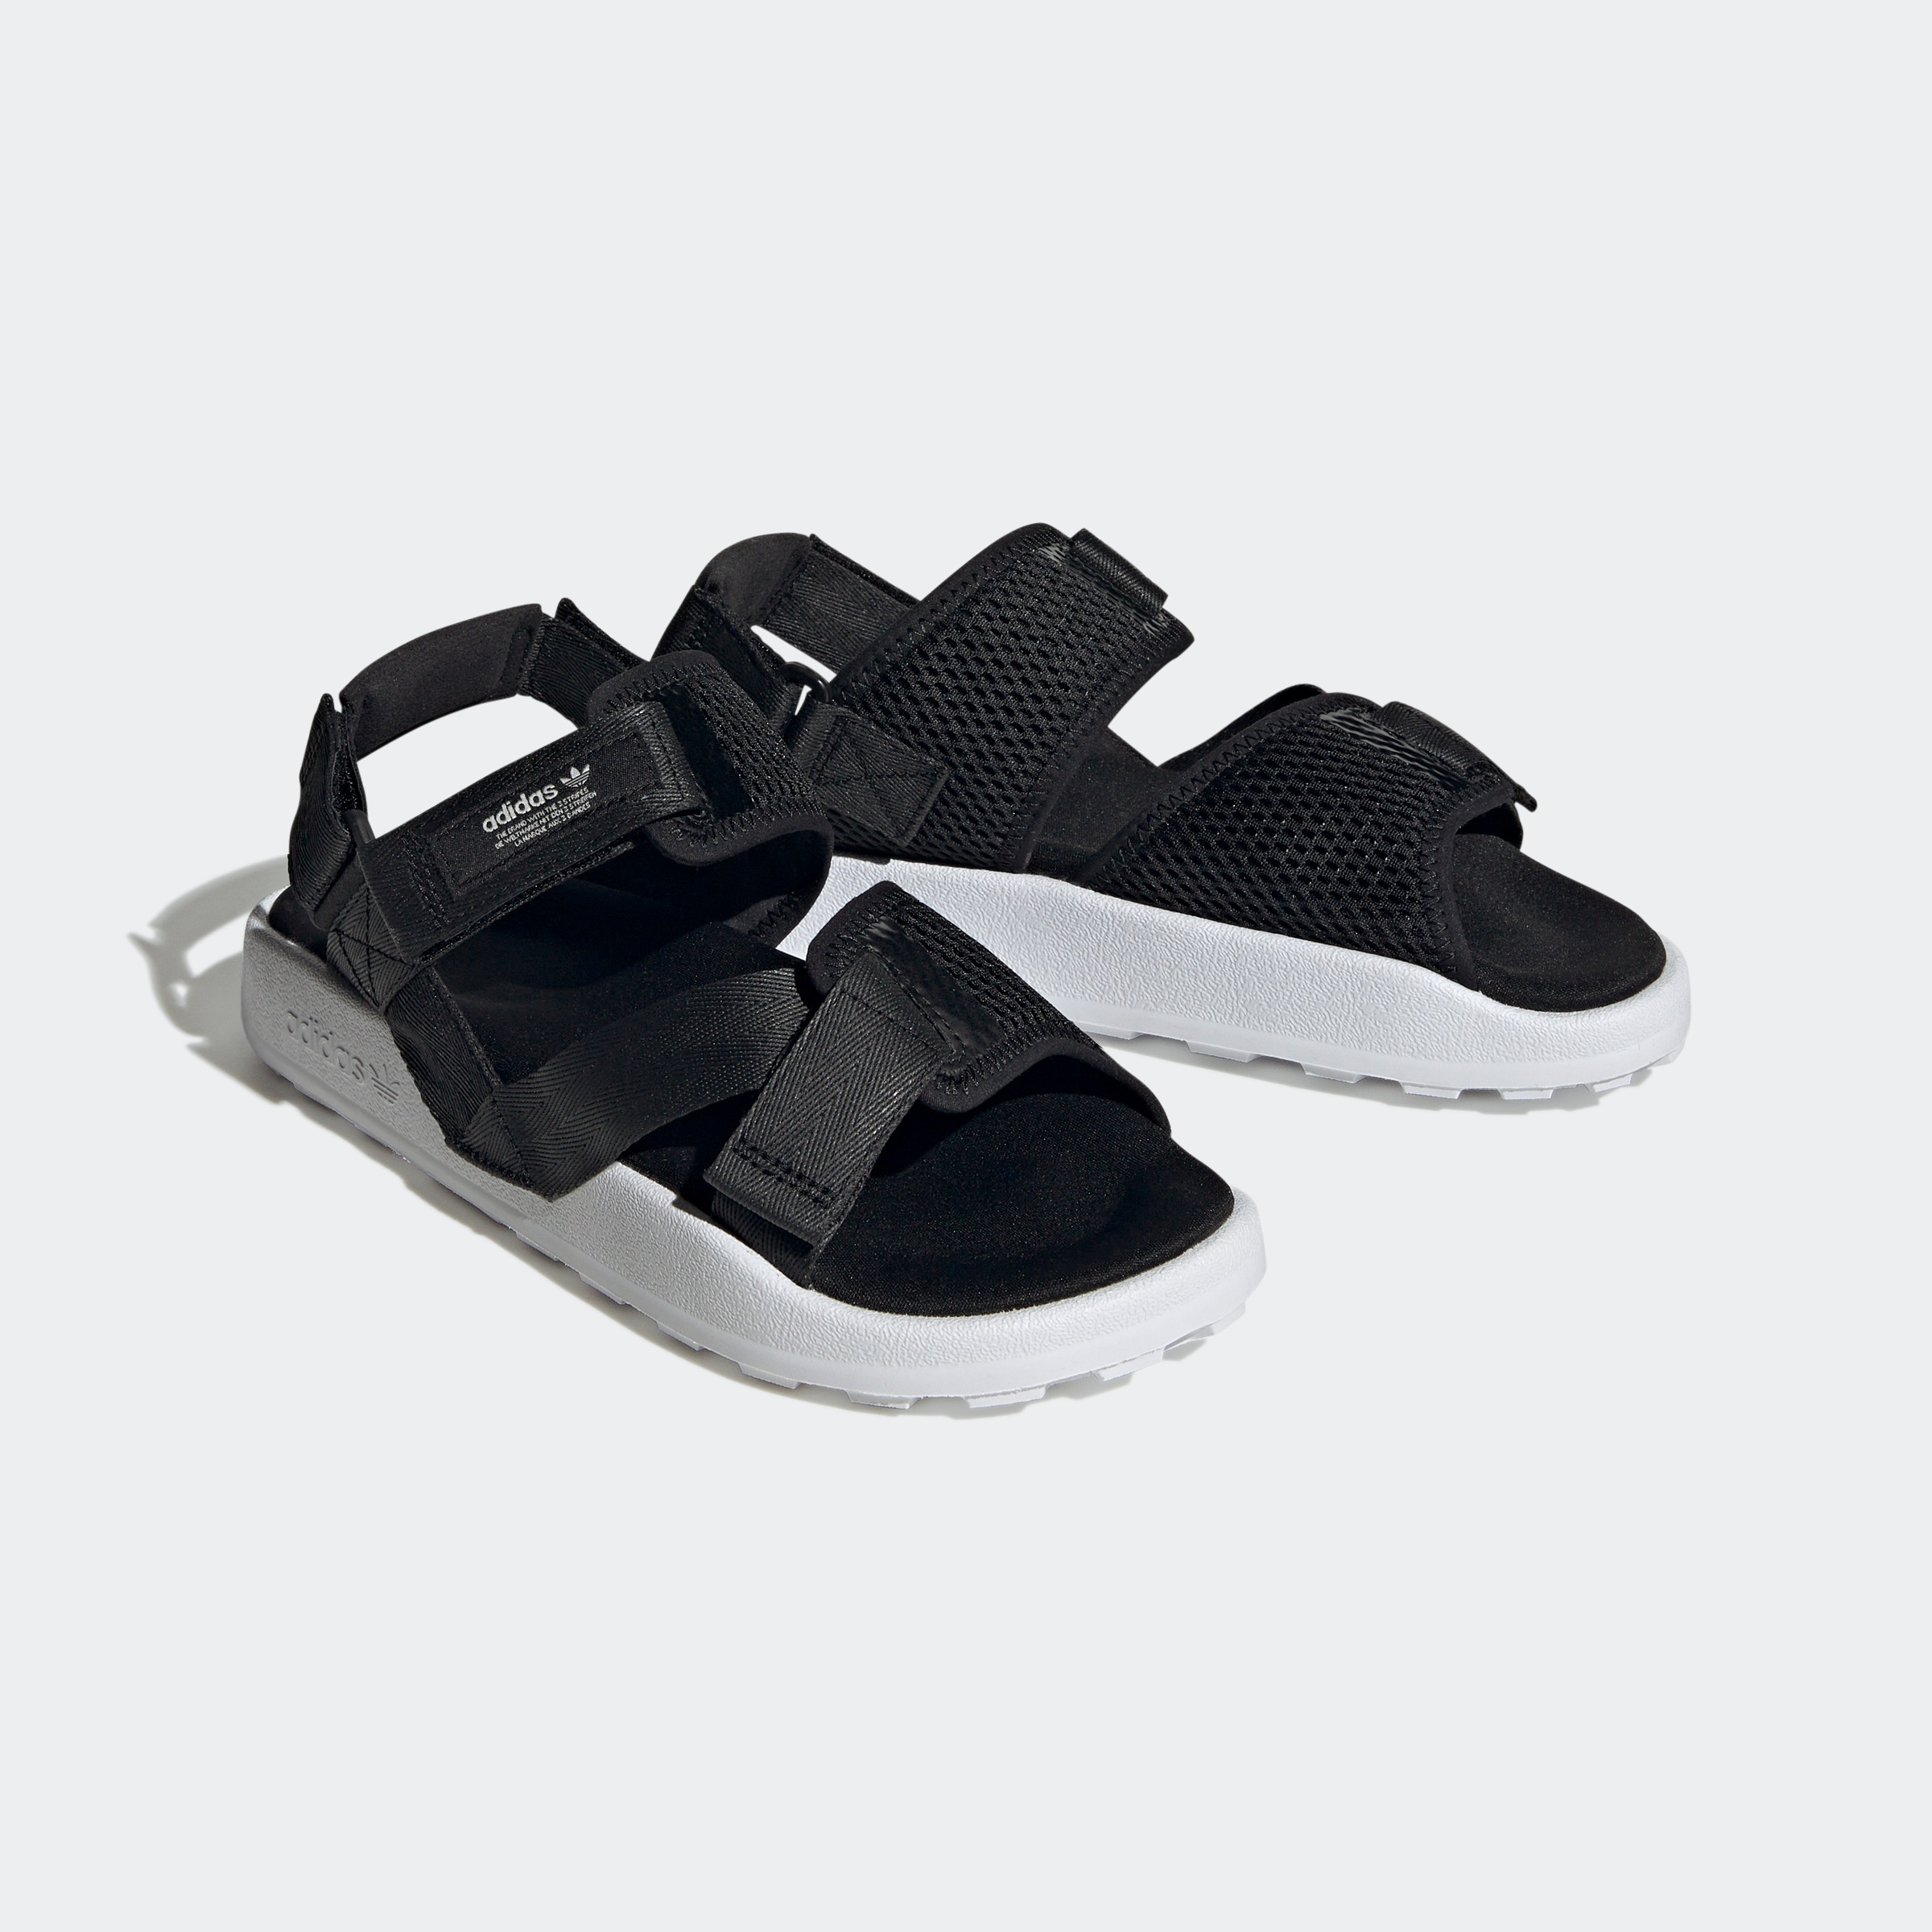 mit adidas ADVENTURE Klettverschluss Sandale online Jelmoli-Versand Schweiz bei »ADILETTE SANDALE«, Originals shoppen